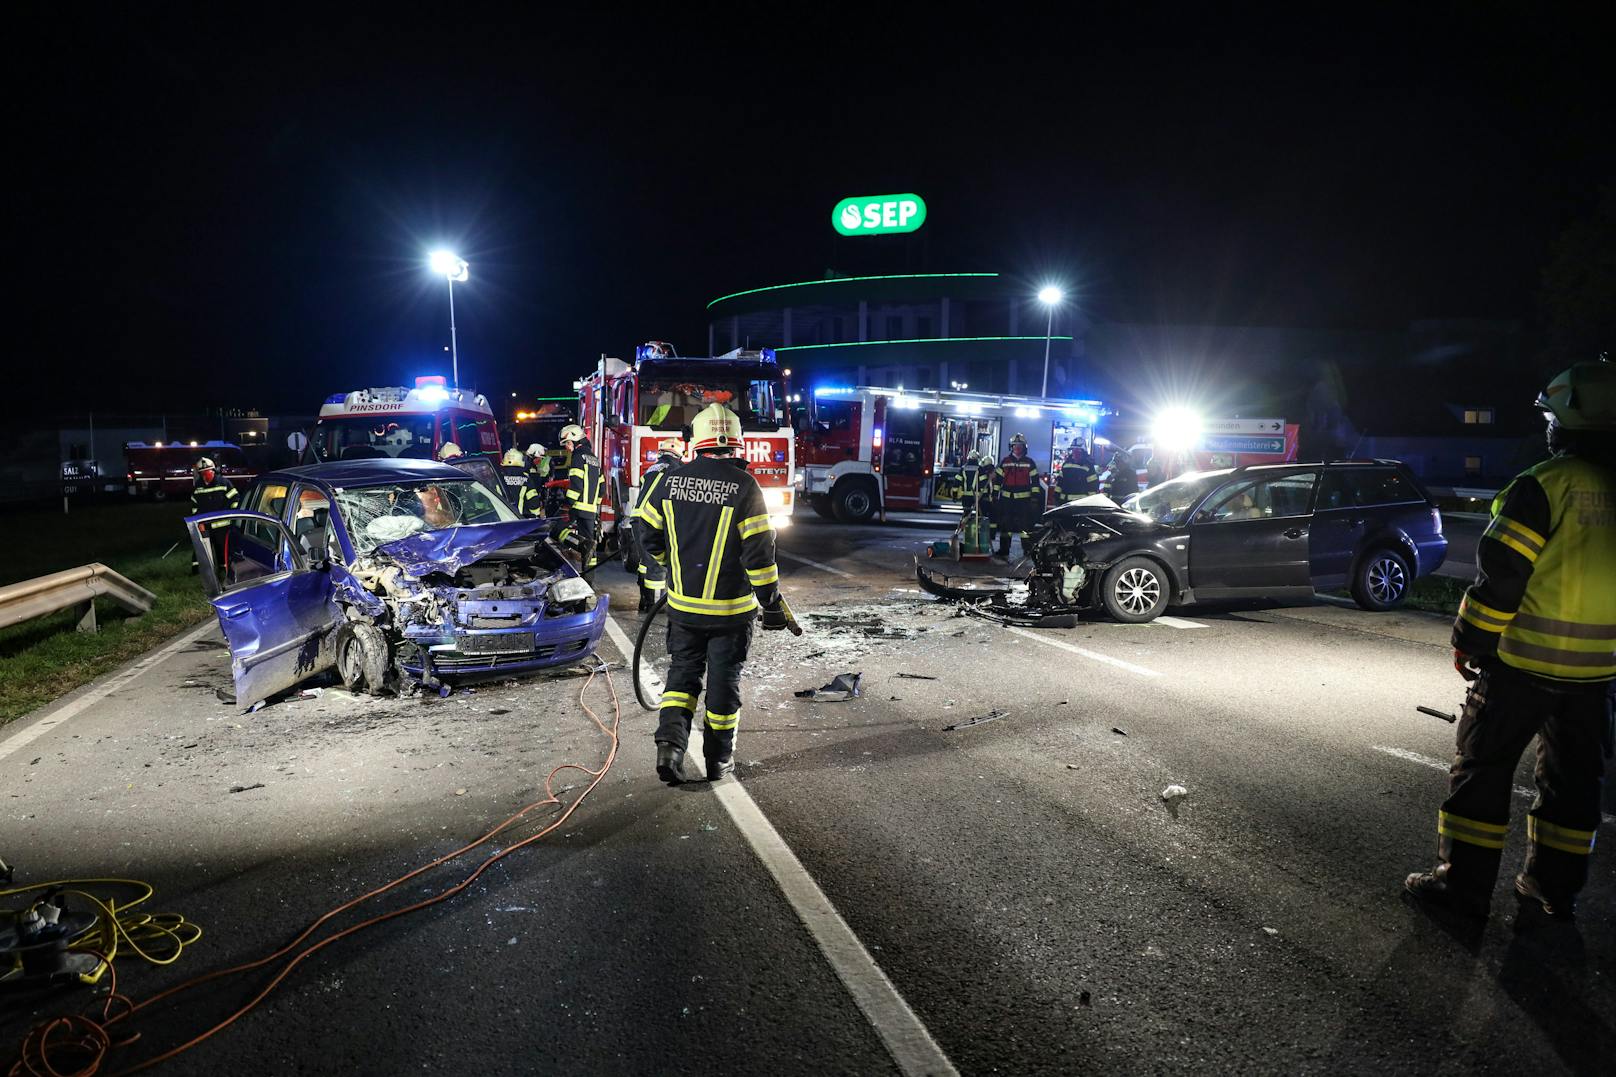 Bilder vom Unfallort zeigen wie schwer der Verkehrsunfall war.